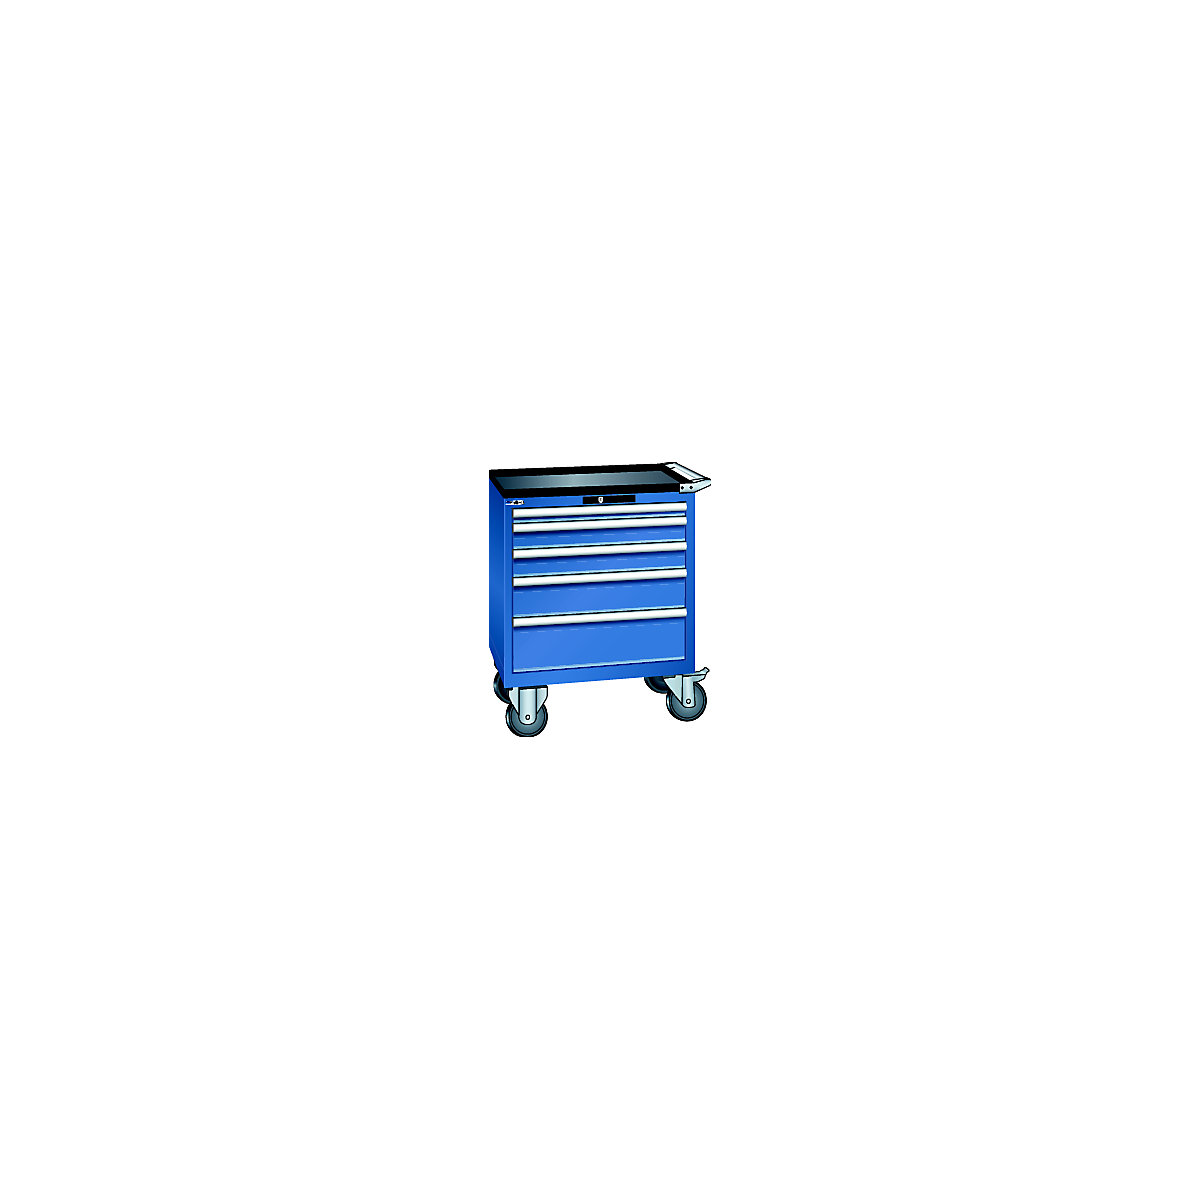 LISTA – Ladičar, pomičan, ŠxDxV 717 x 572 x 962 mm, ladice 1 x 50 / 2 x 100 / 1 x 150 / 1 x 200 mm, u encijan plavoj boji